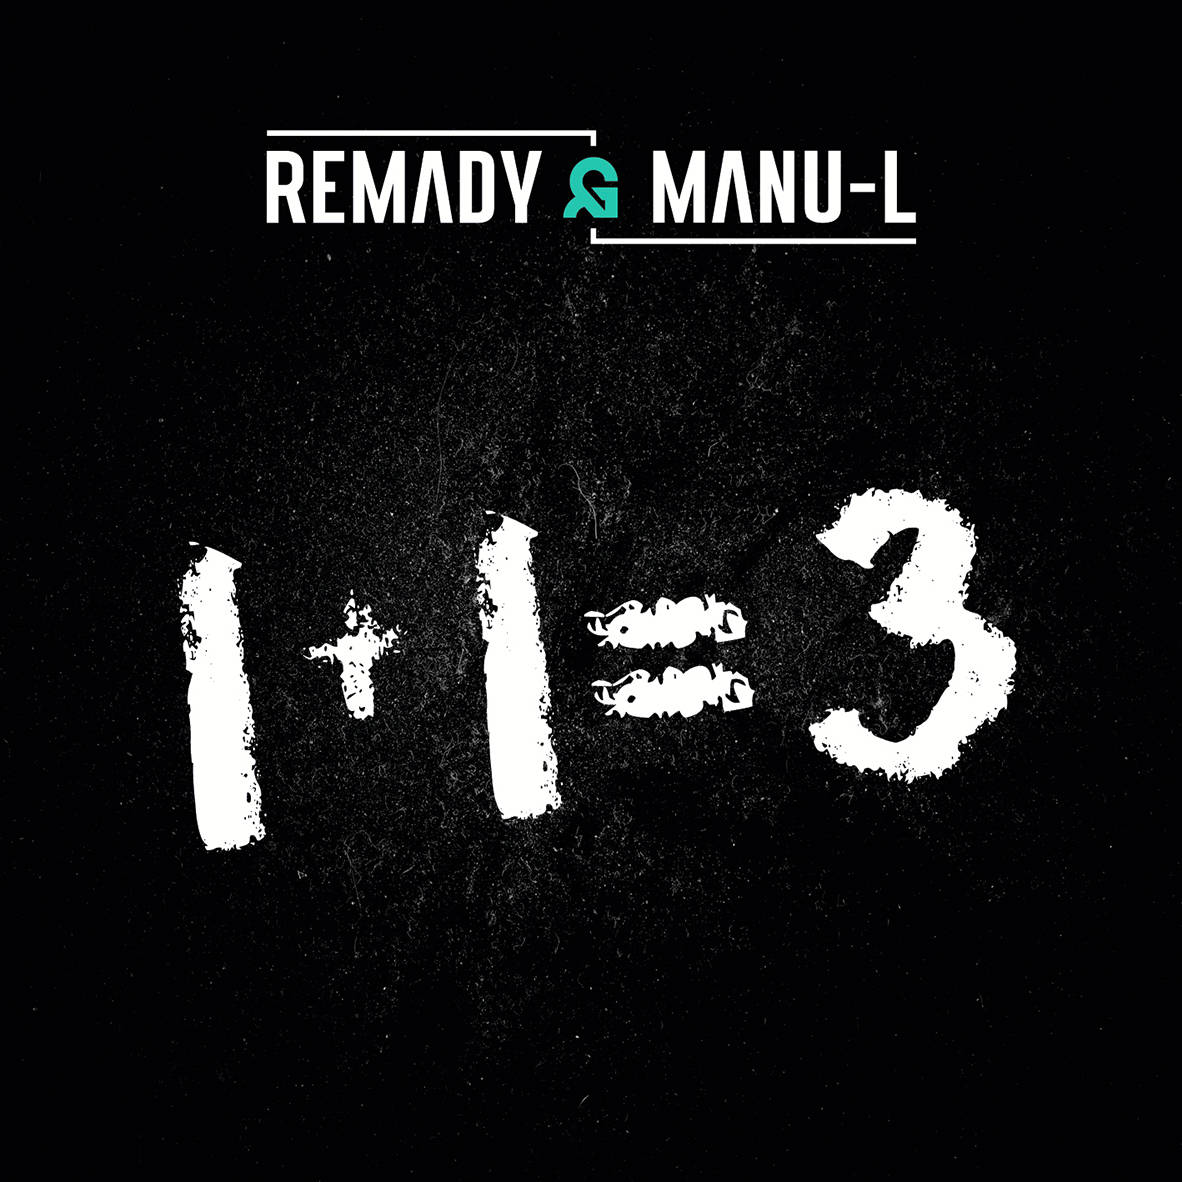 Nowy album Remady & Manu-L już w sklepach!